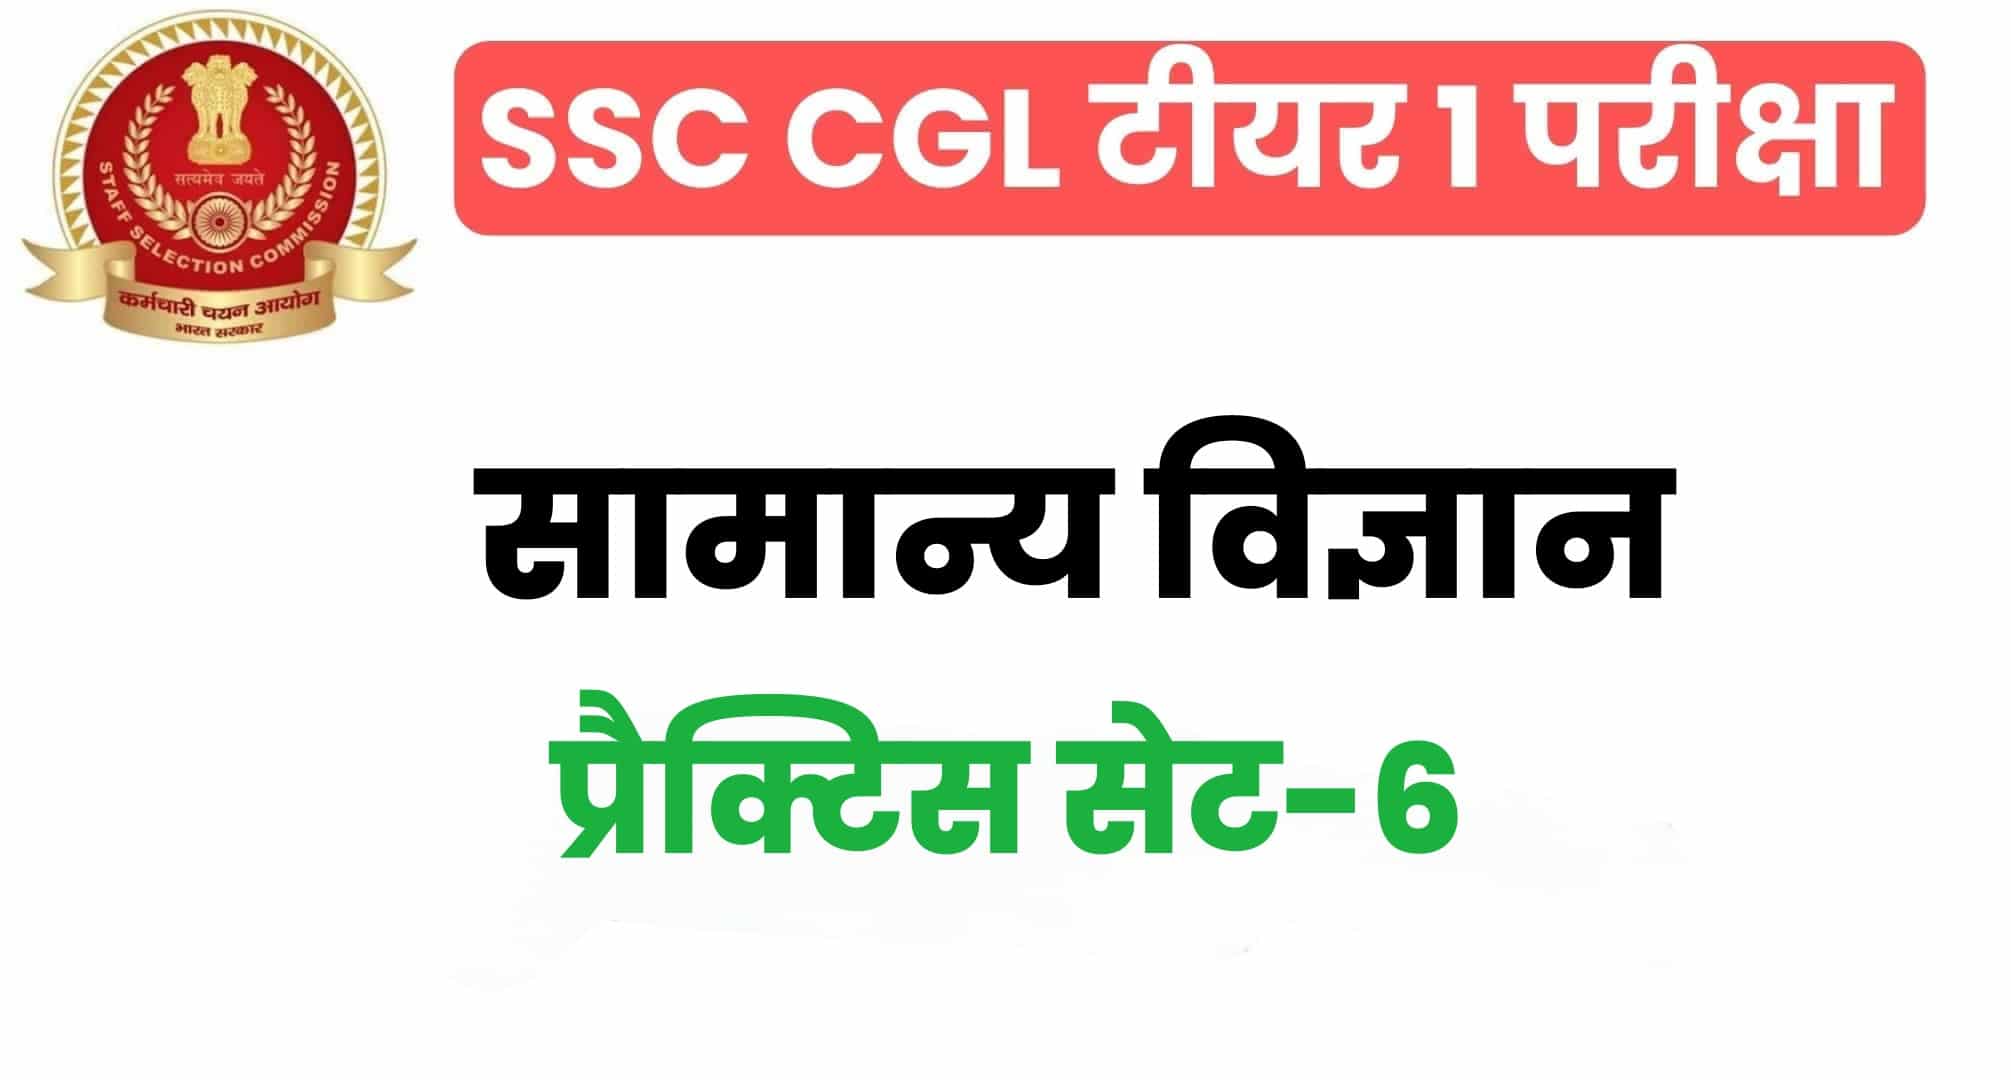 SSC CGL General Science प्रैक्टिस सेट 6 : सामान्य विज्ञान के 25 महत्वपूर्ण प्रश्न, परीक्षा से पहले पढ़ लें